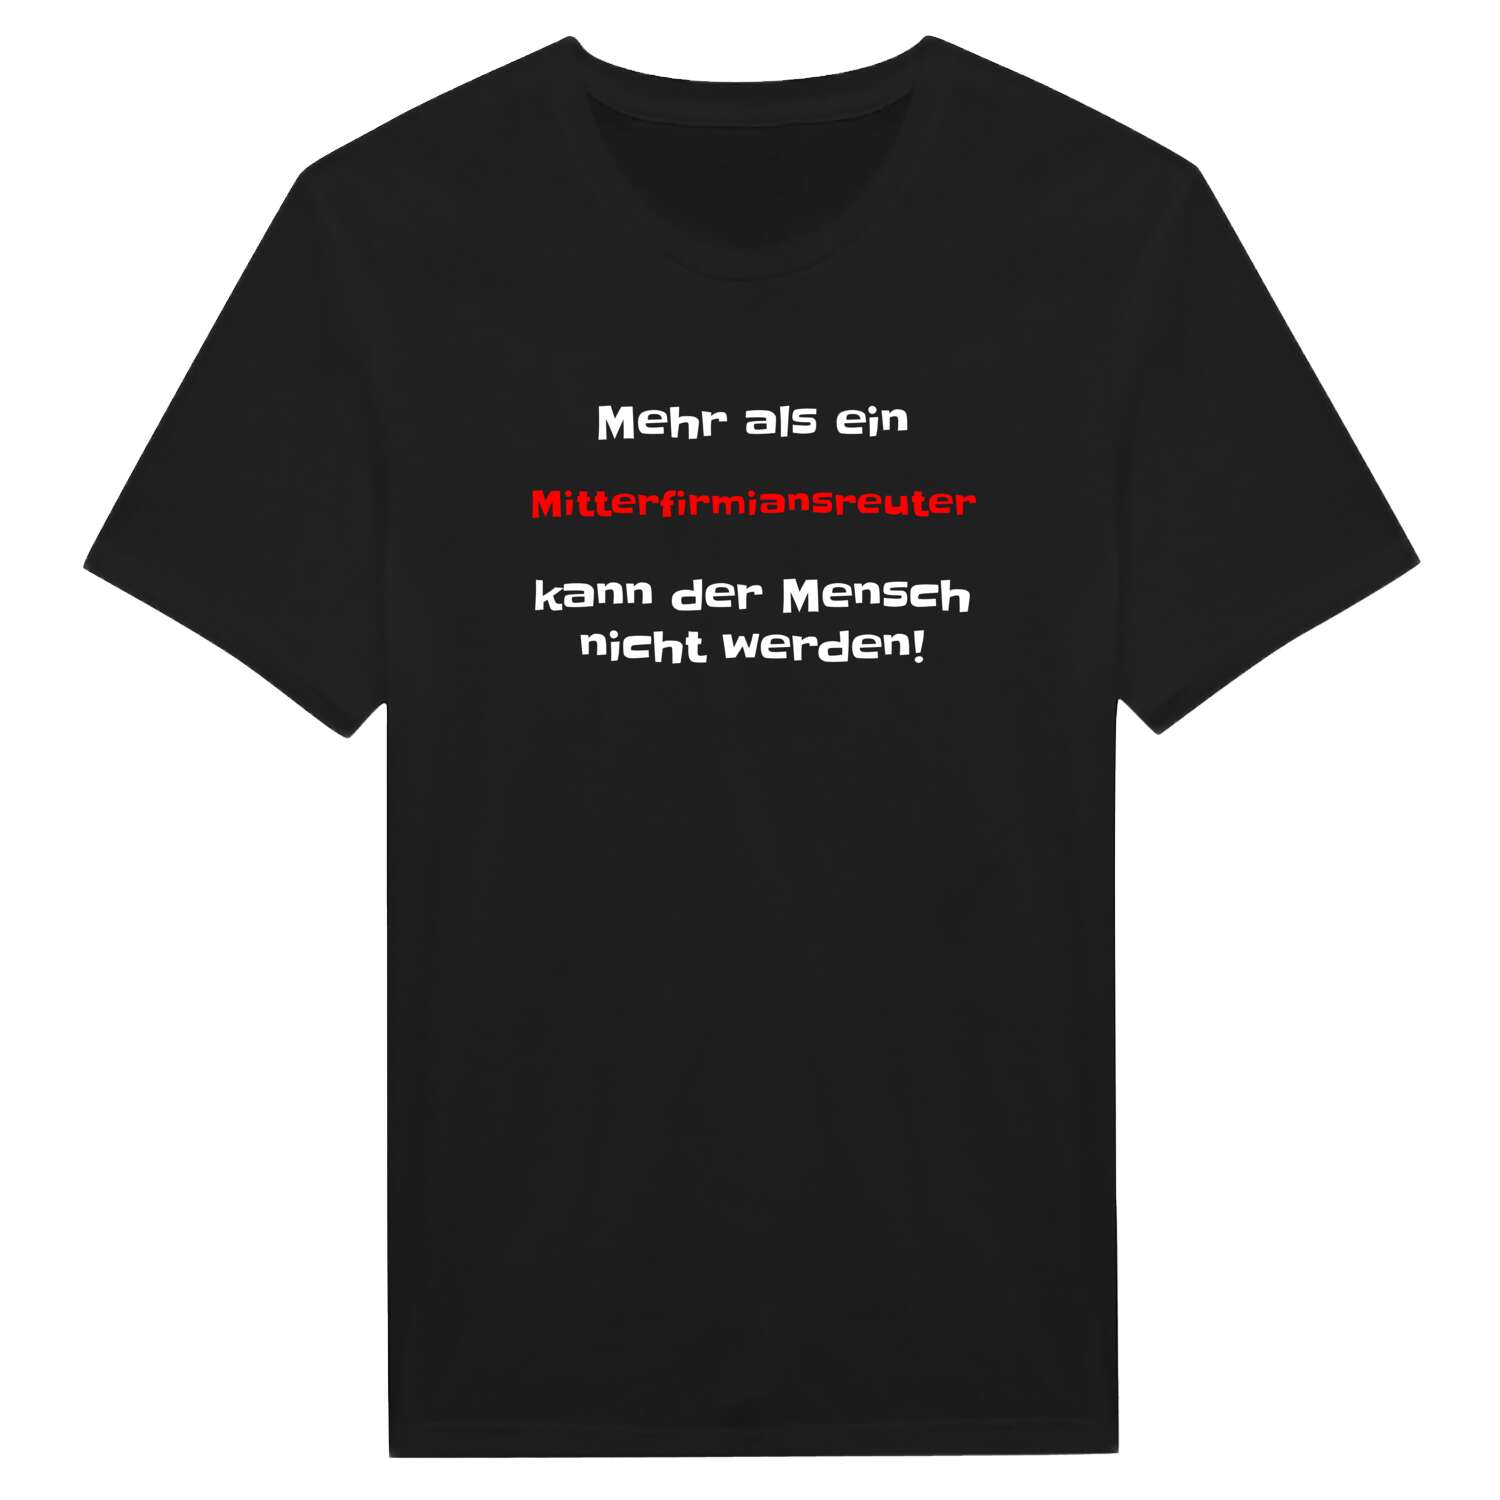 Mitterfirmiansreut T-Shirt »Mehr als ein«